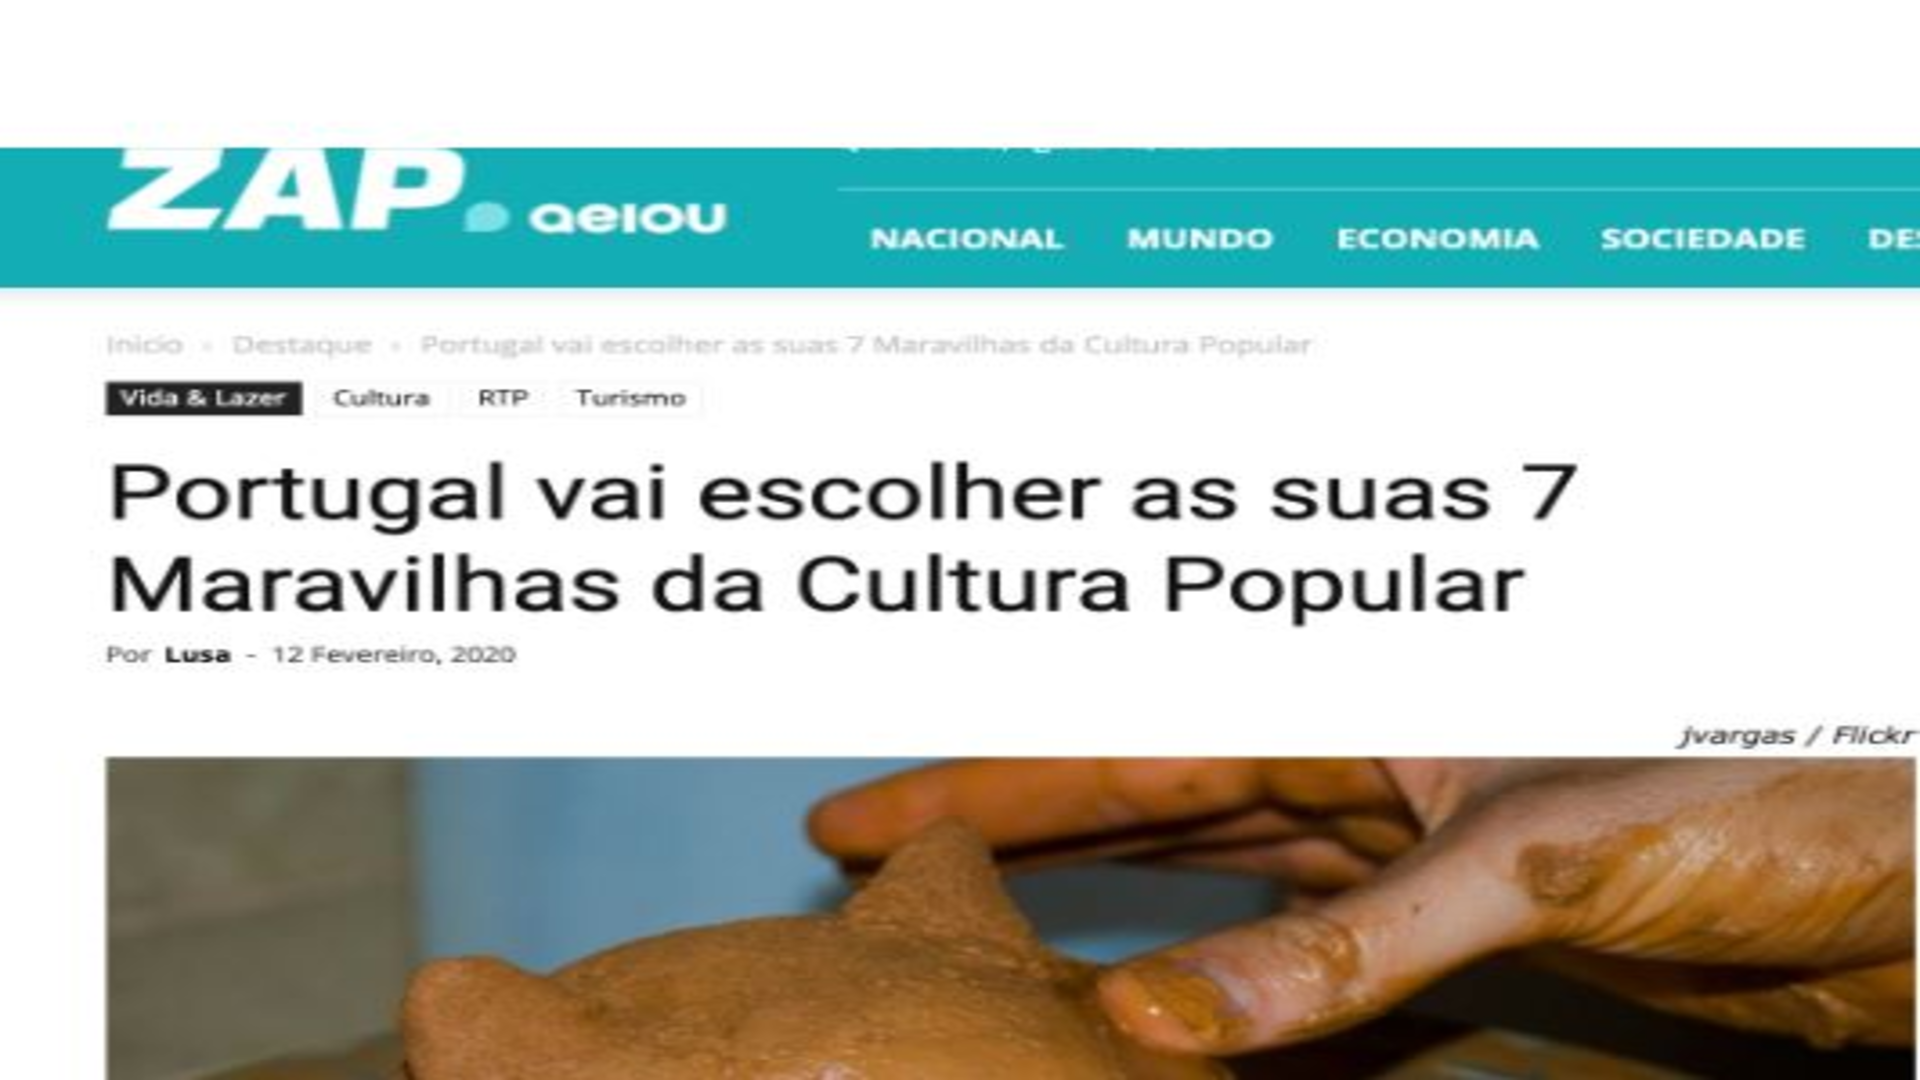 Portugal vai escolher as suas 7 Maravilhas da Cultura Popular®